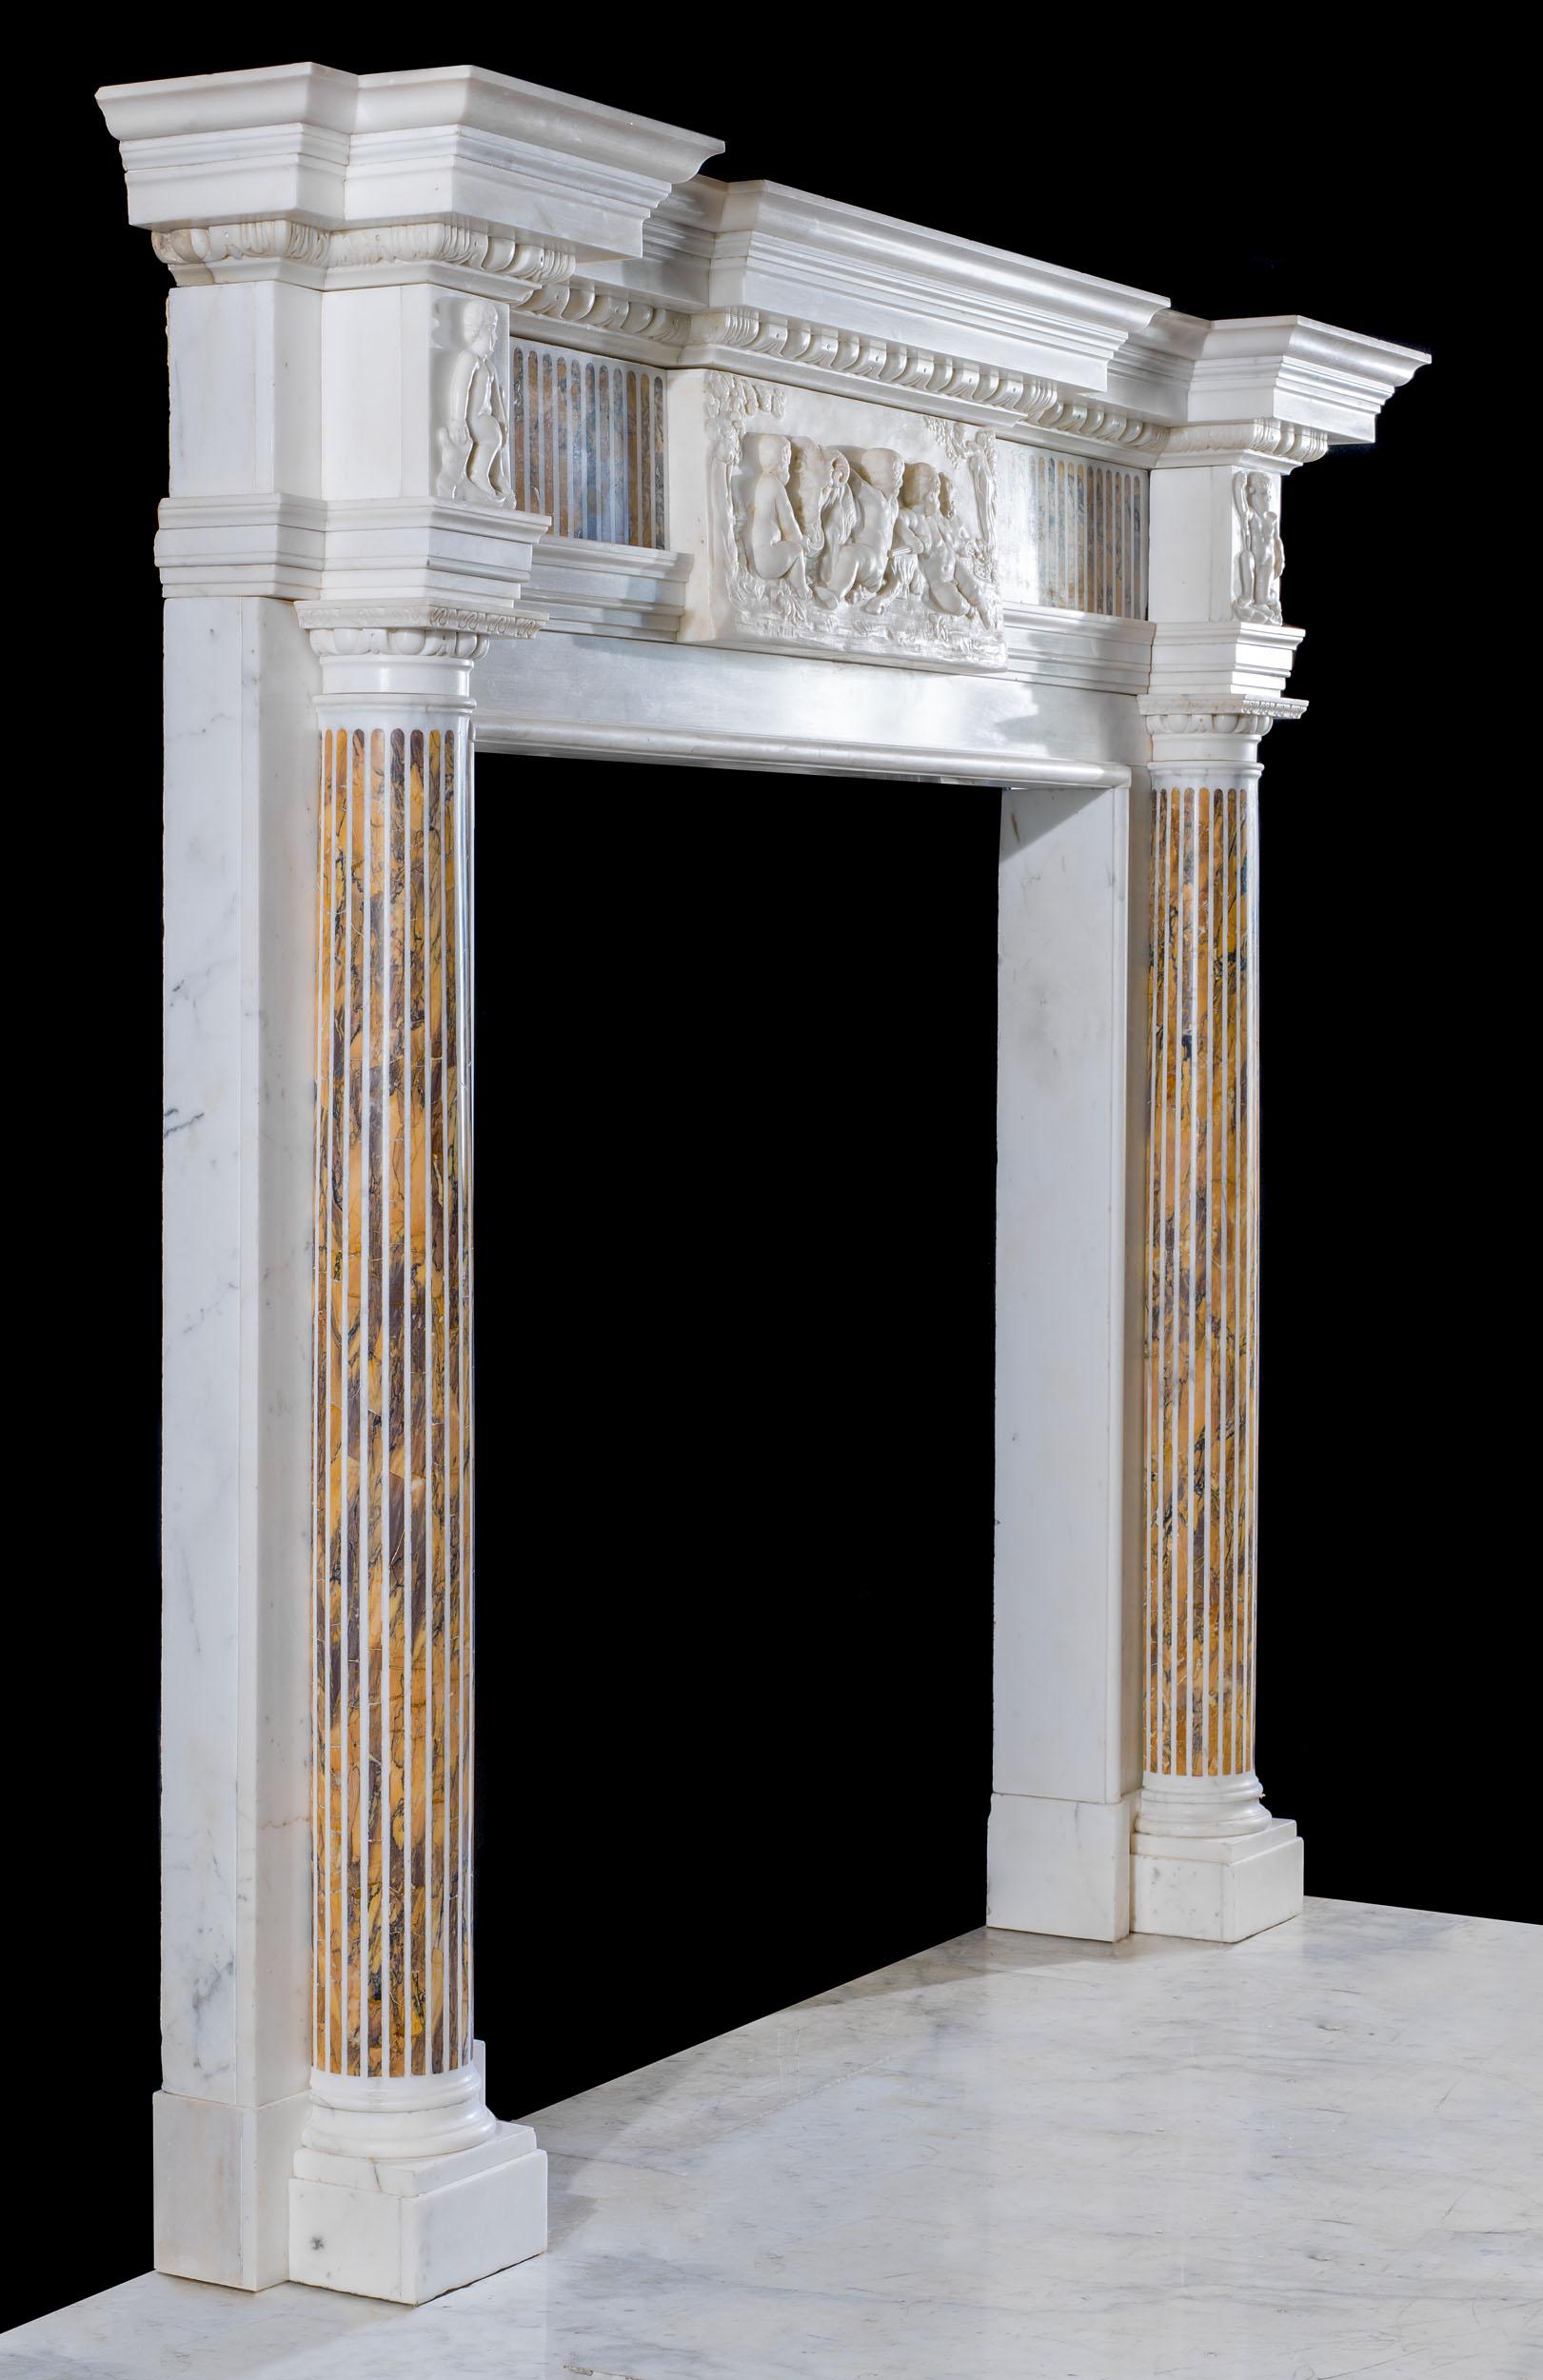 Belle et grande cheminée néoclassique en marbre statuaire avec incrustation de marbre de Sienne. L'étagère de la façade est sculptée avec audace et se trouve au-dessus d'une étagère inférieure en haut-relief en forme d'œuf et de fléchette et d'une